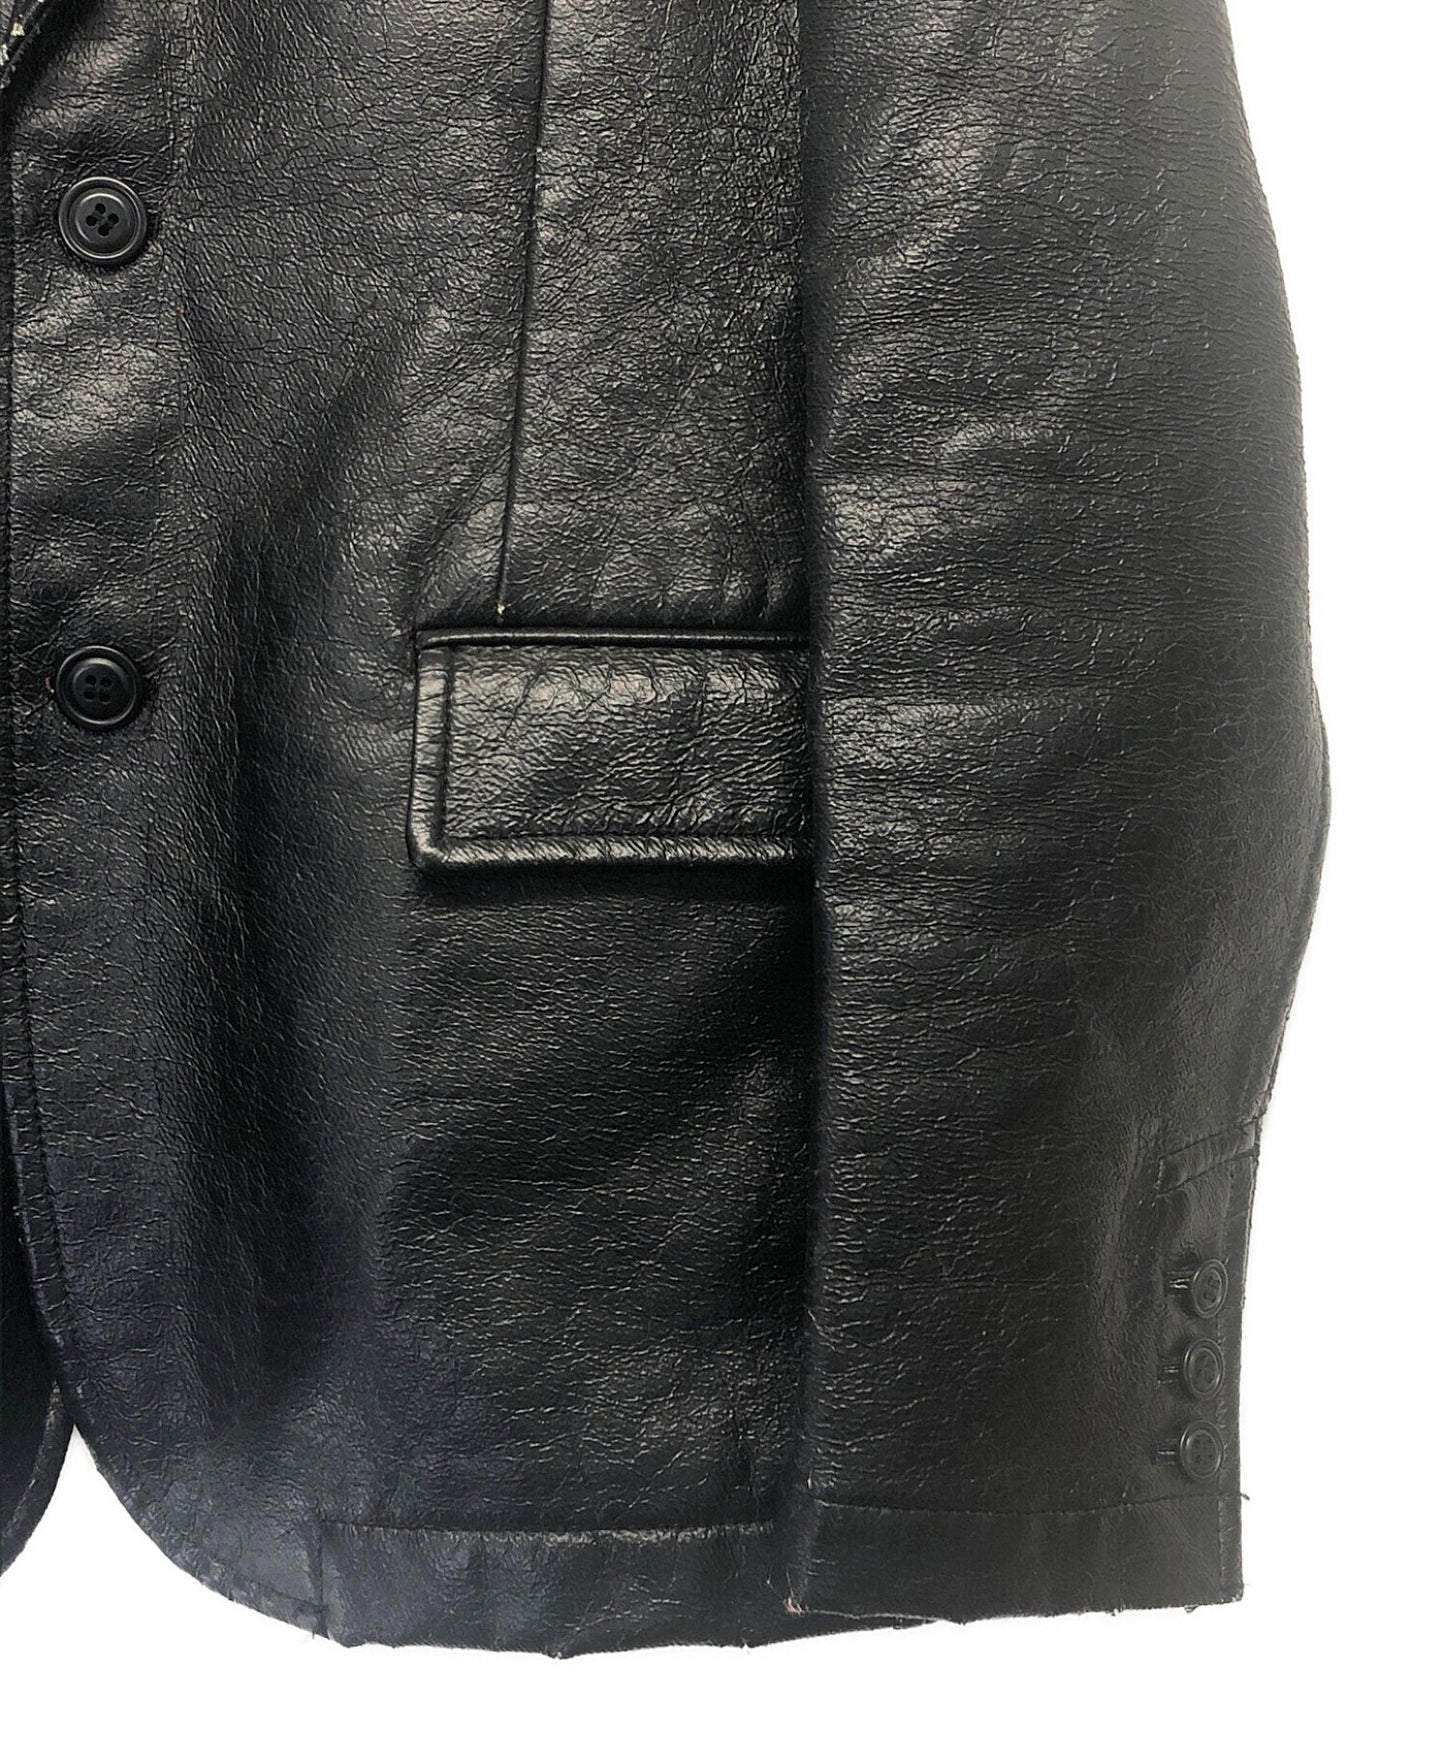 [Pre-owned] COMME des GARCONS HOMME PLUS jacket PG-J042